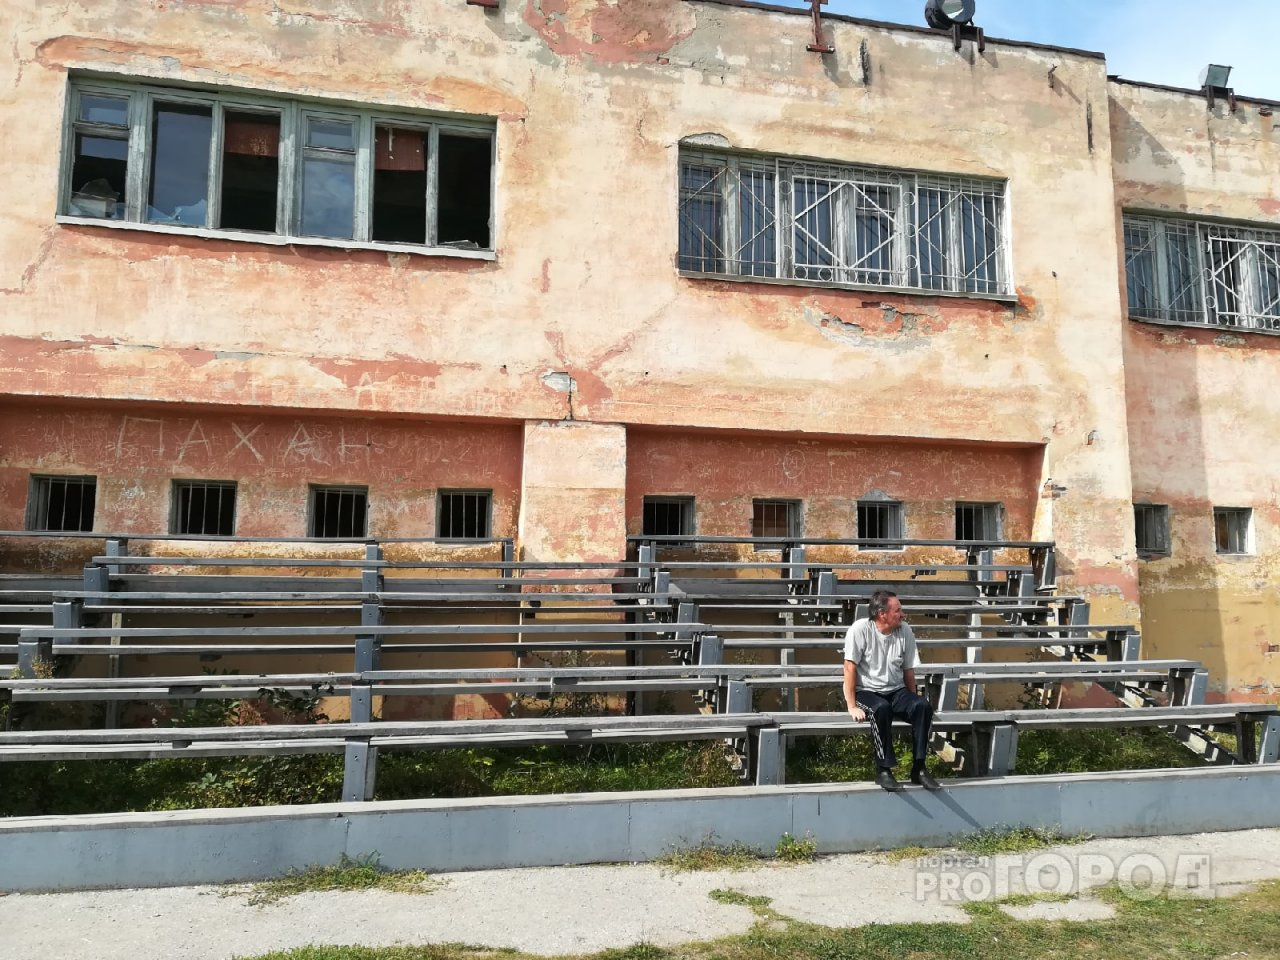 В Чебоксарах есть место, где время остановилось: советские остановки, архитектура и разрушающийся стадион